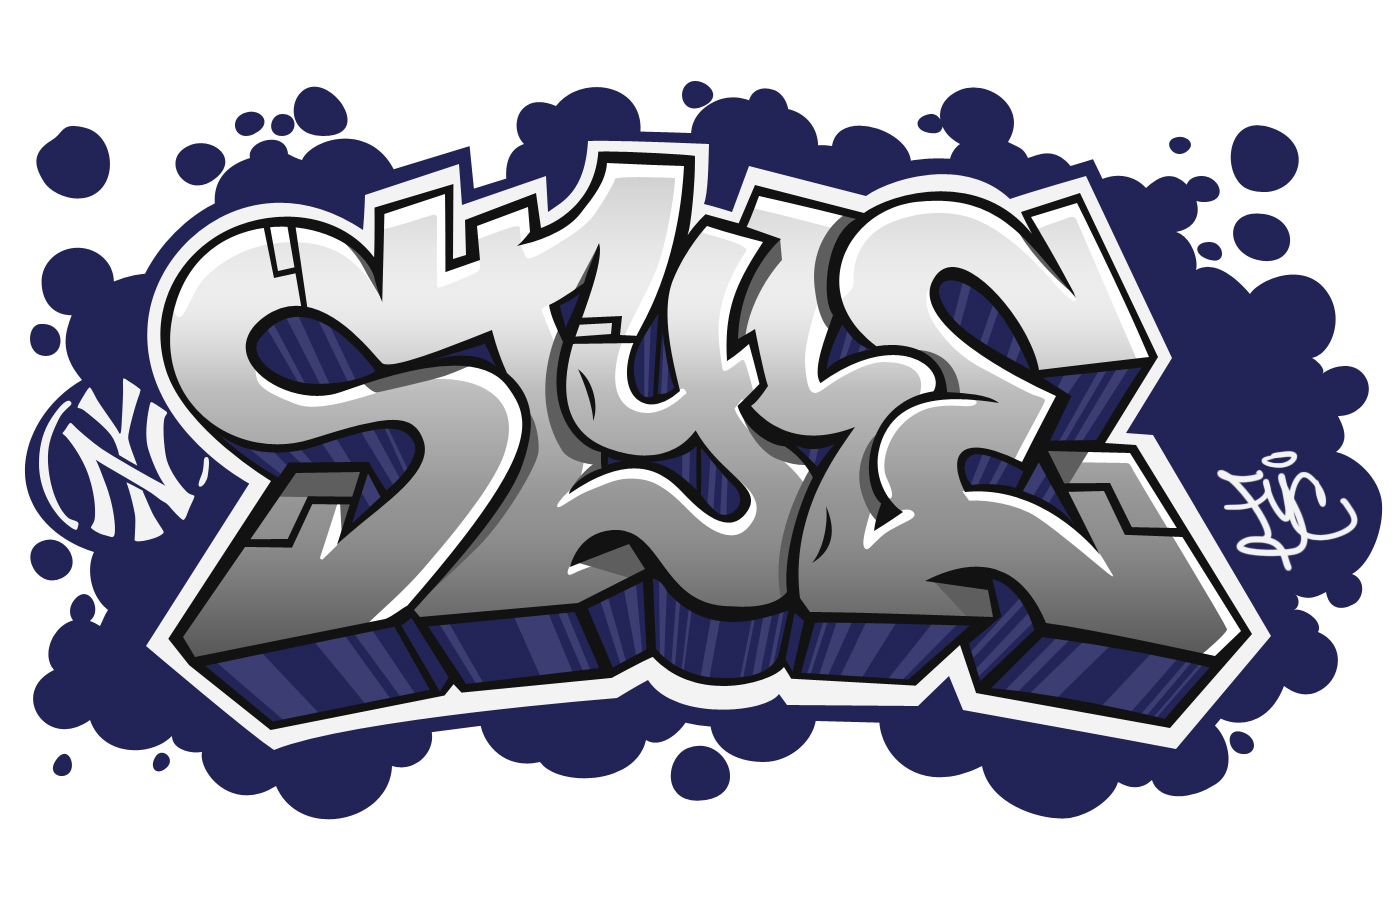 Graffiti Words | New Graffiti Art